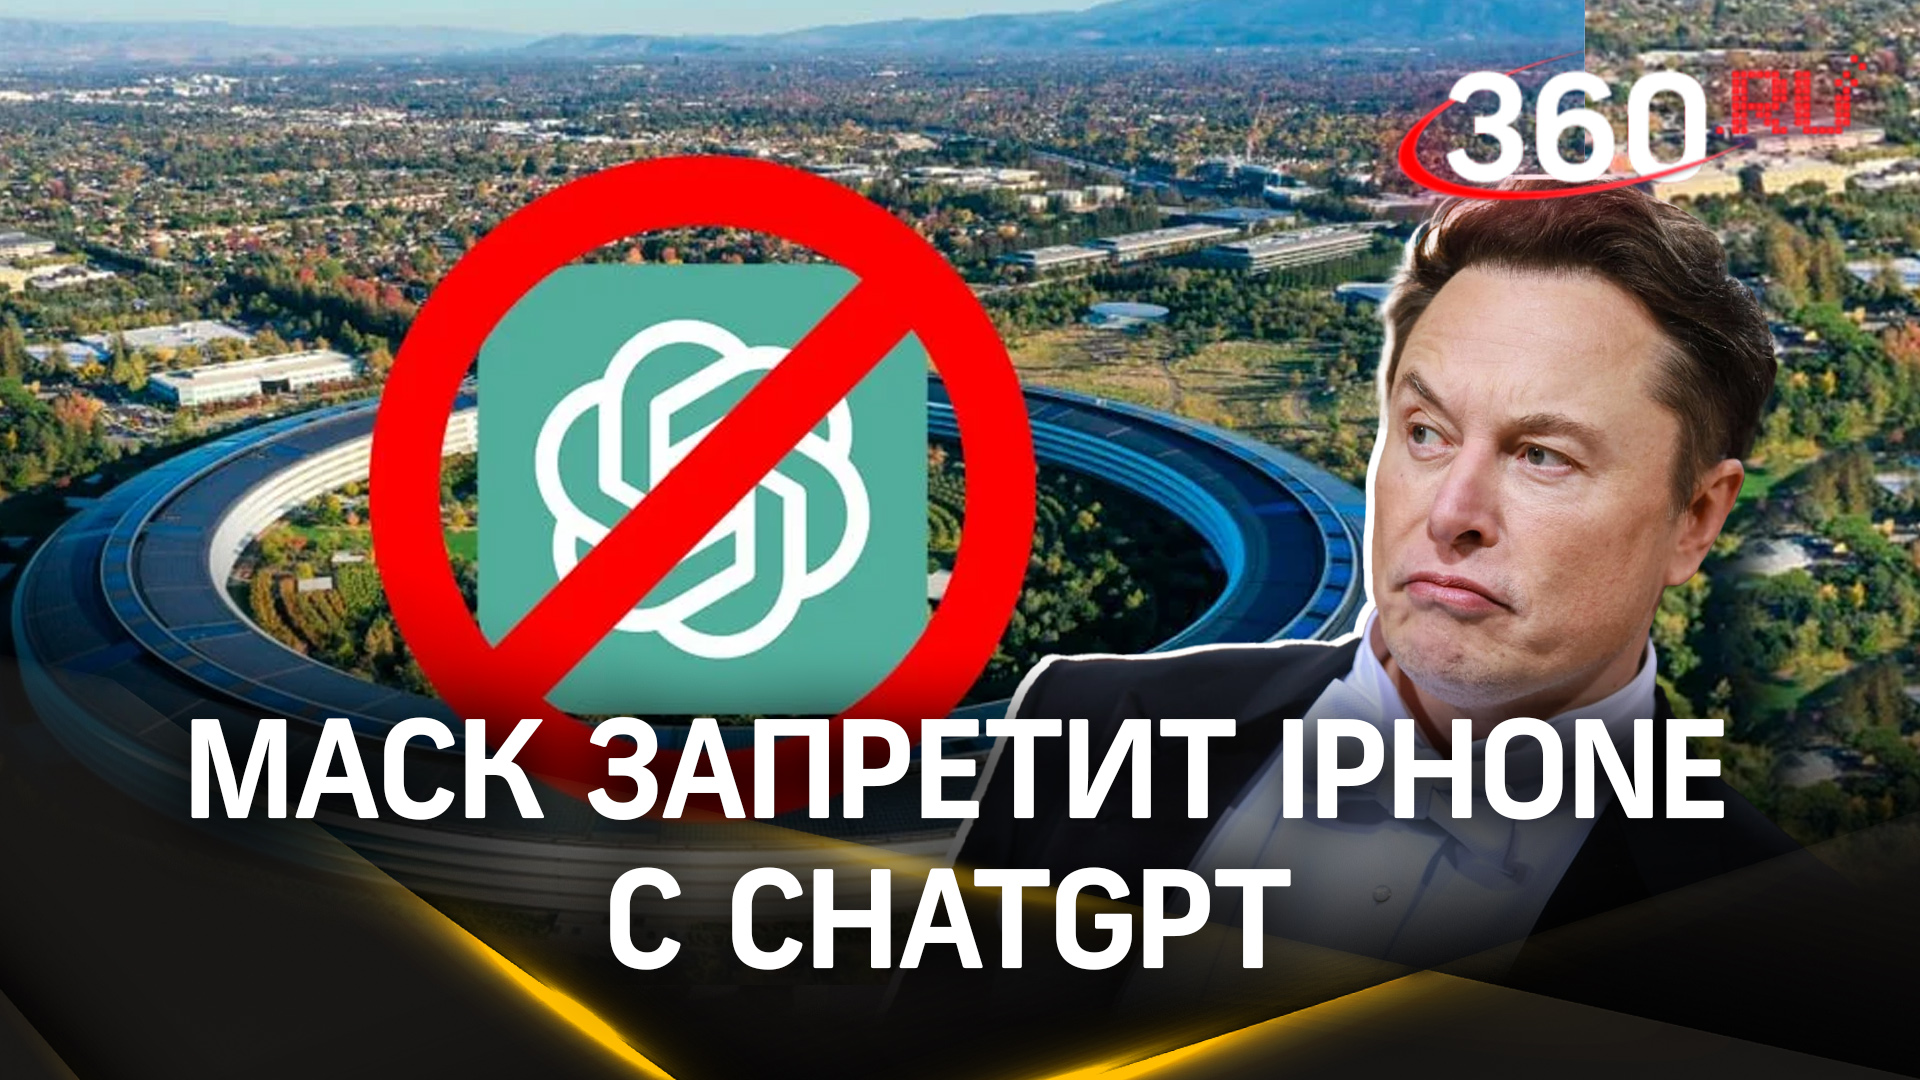 Маск грозит запретить Apple в своих компаниях: ChatGPT - угроза безопасности?